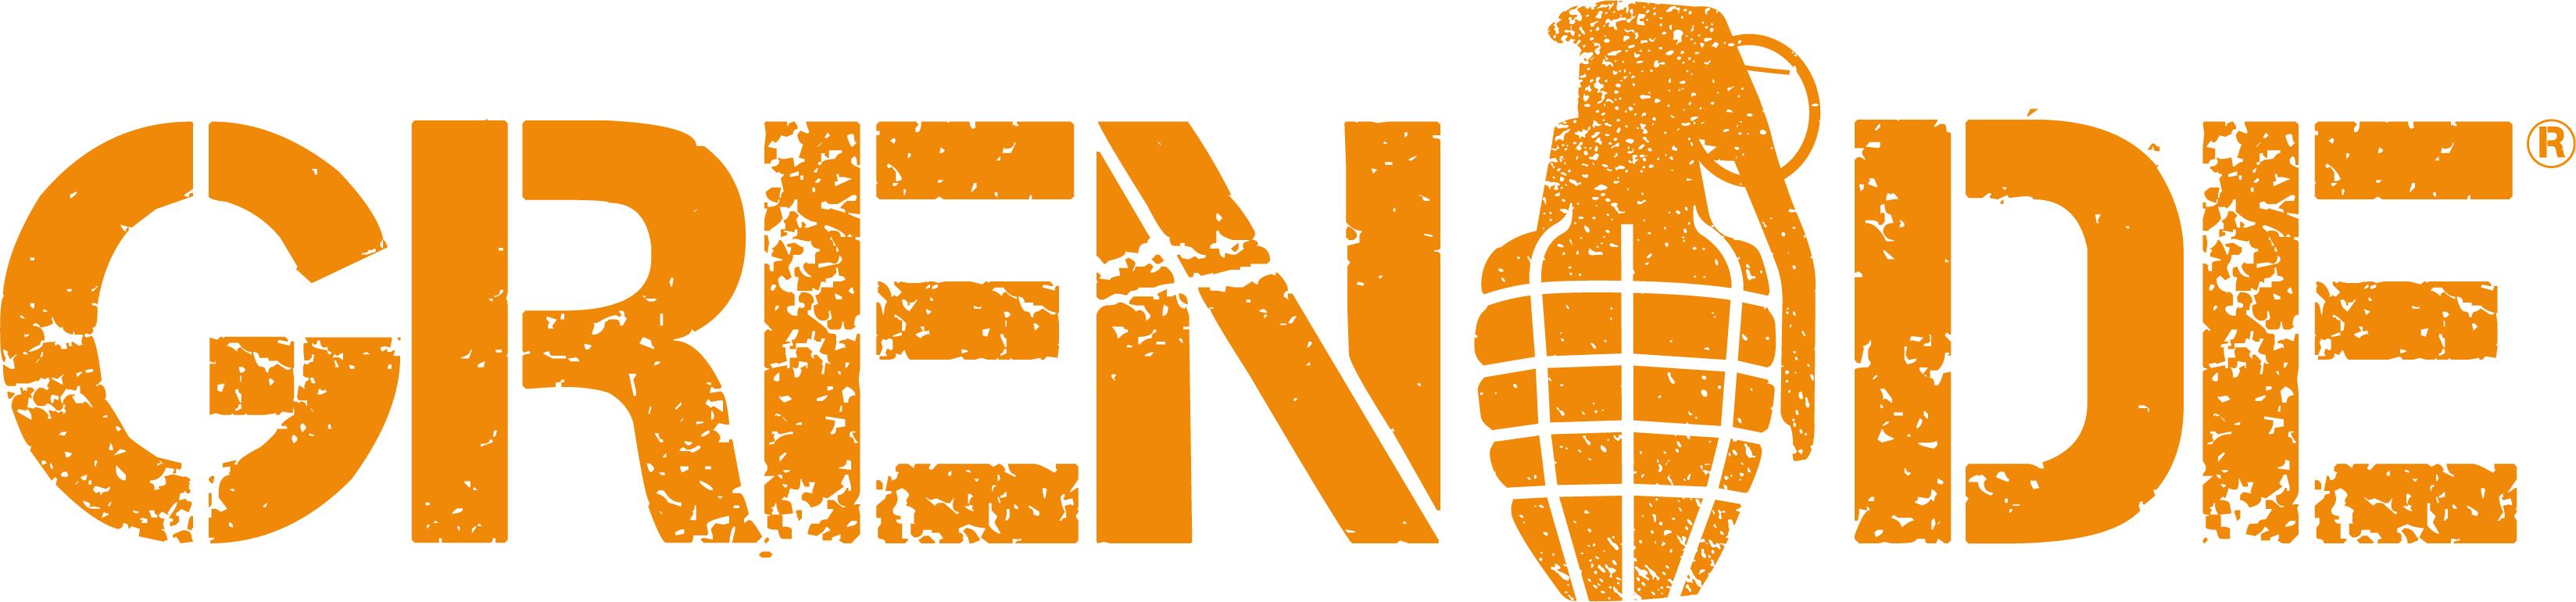 Grenade-Main-Logo